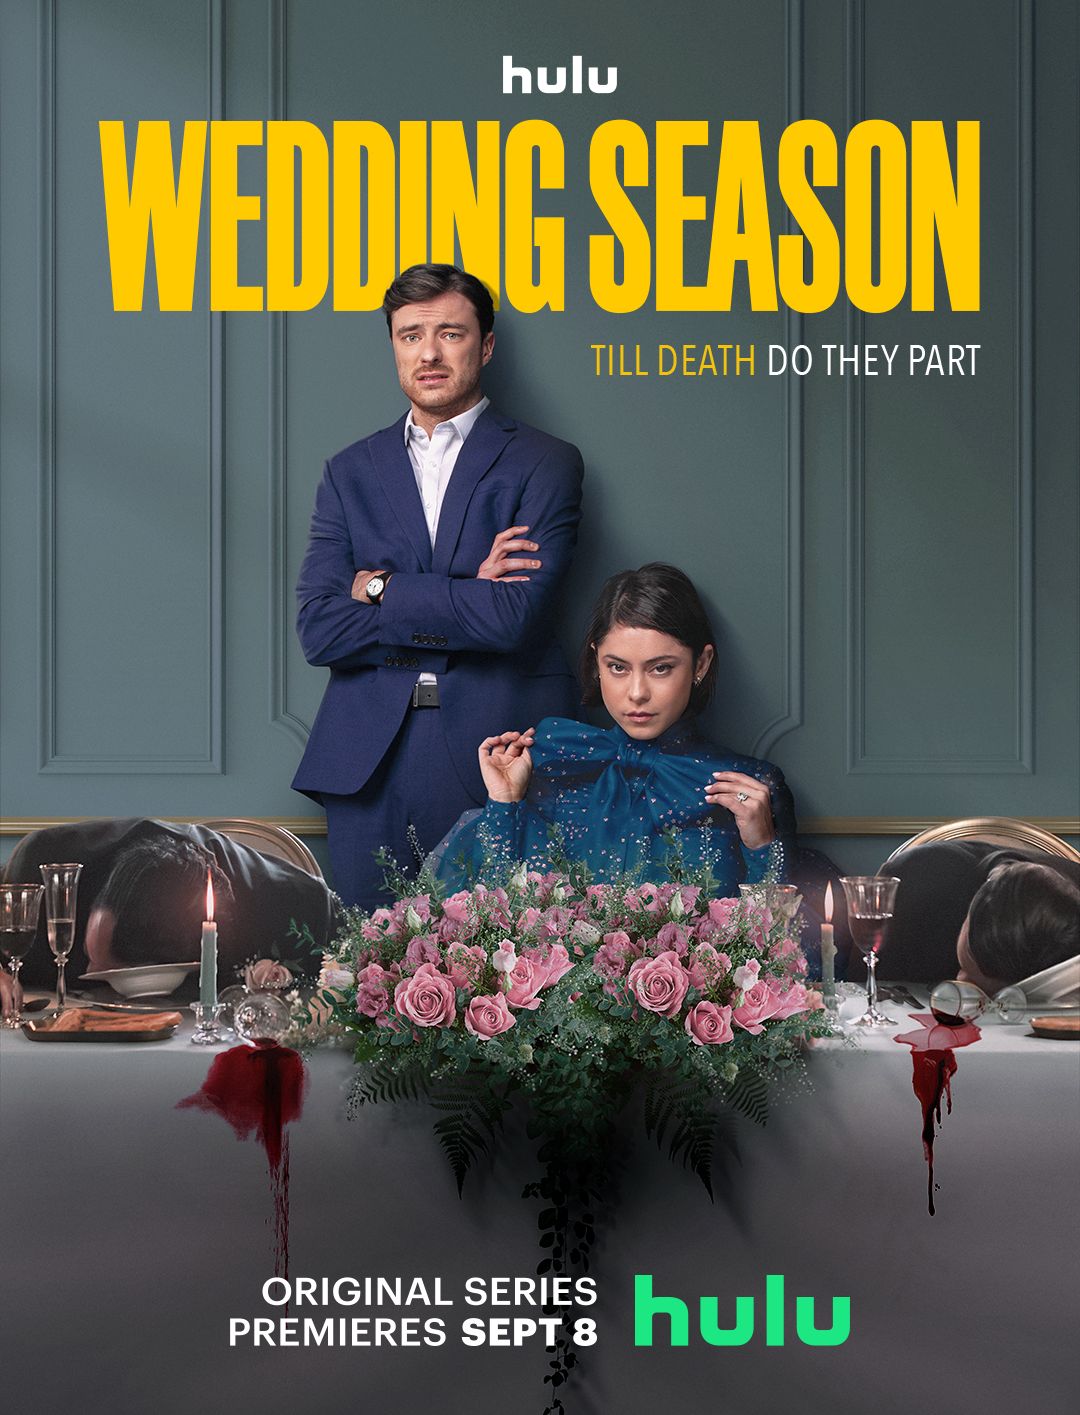 Is Wedding Season (2022) available on Hulu